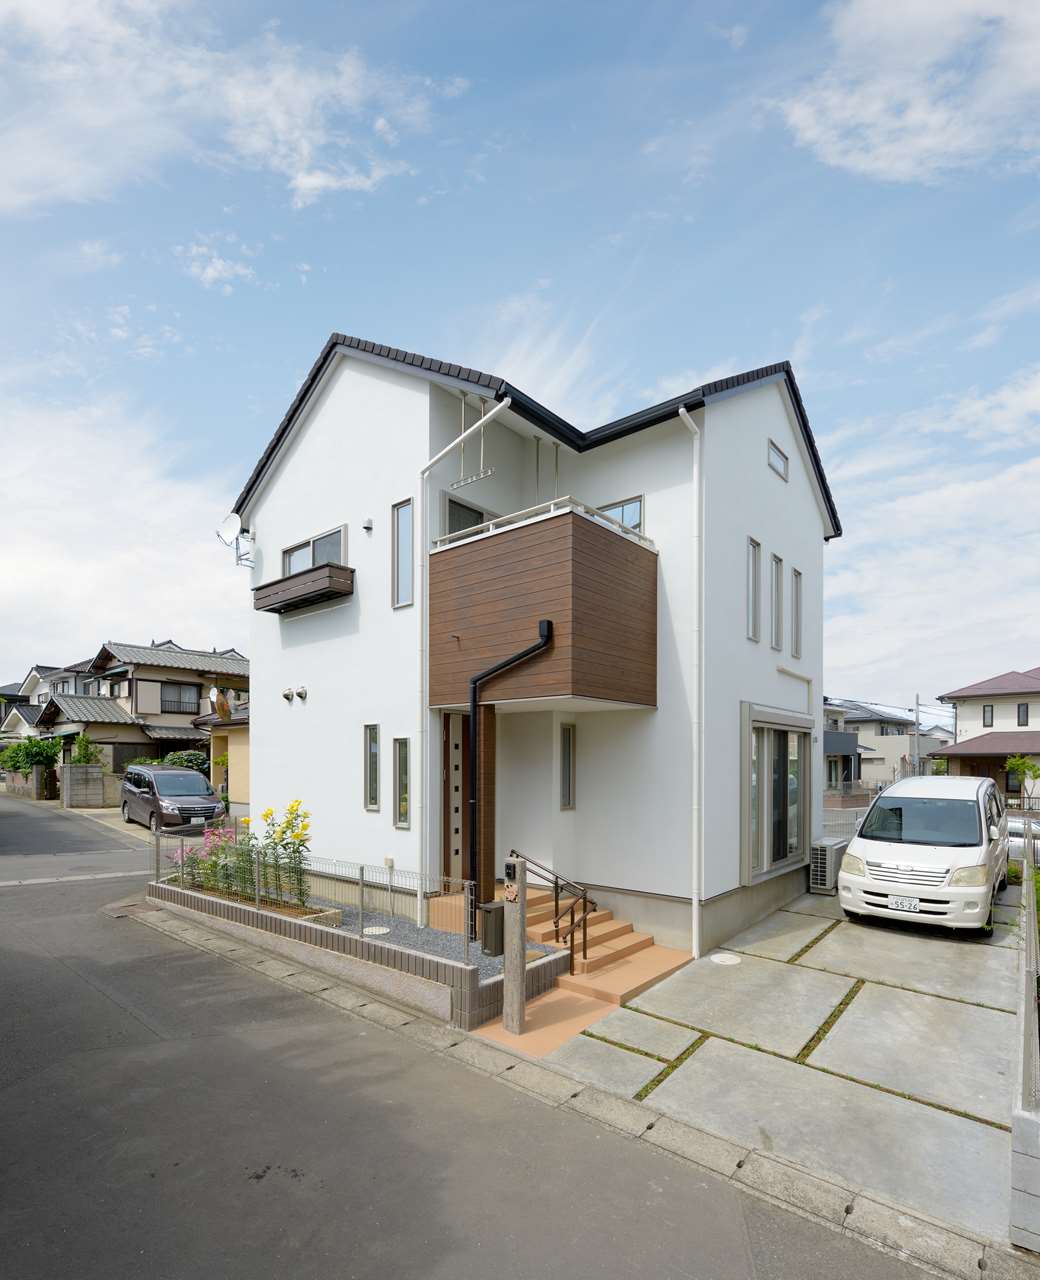 守谷市で注文住宅を建てる方へ、茨城県内の施工事例をご紹介